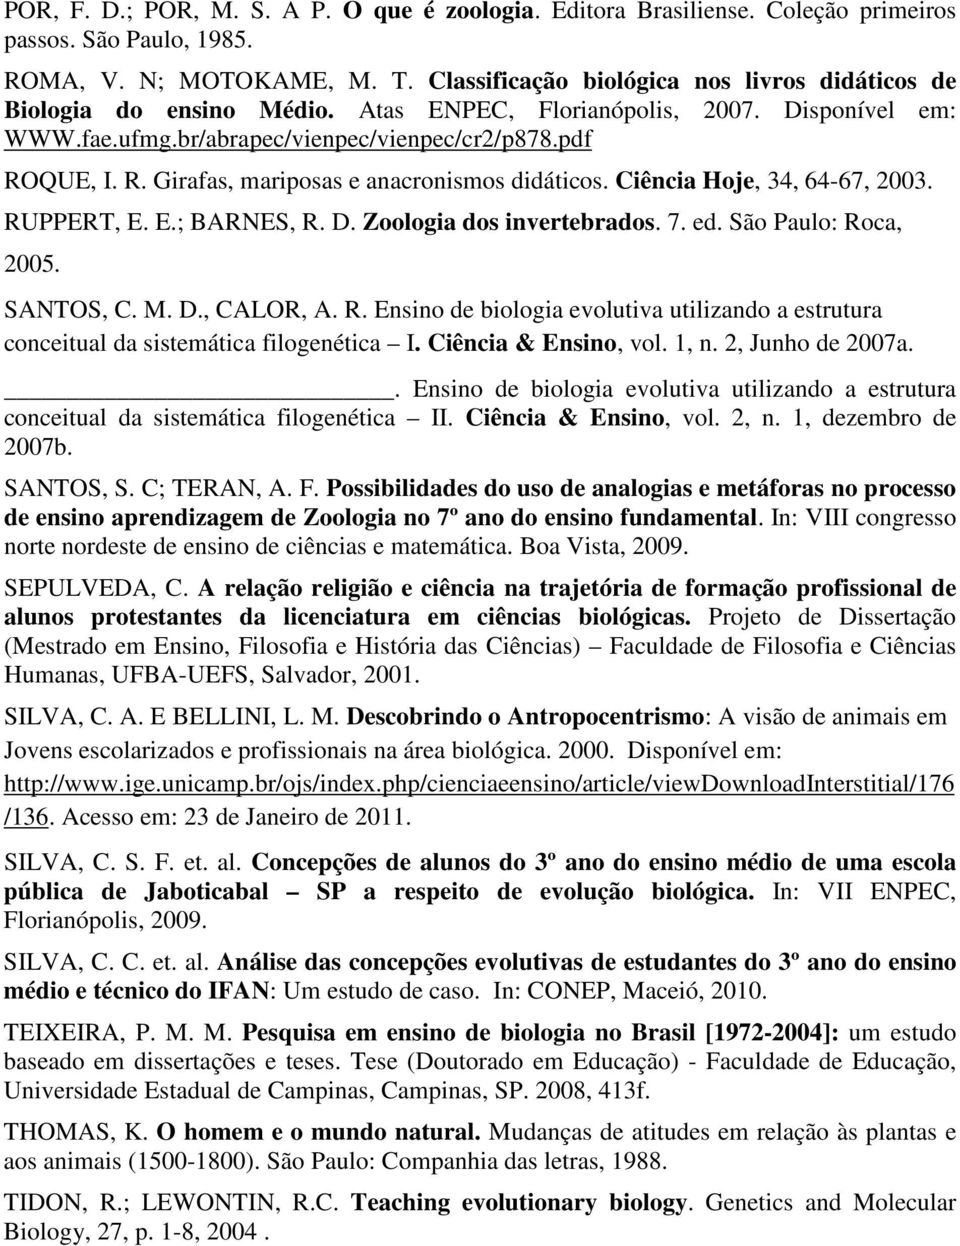 QUE, I. R. Girafas, mariposas e anacronismos didáticos. Ciência Hoje, 34, 64-67, 2003. RUPPERT, E. E.; BARNES, R. D. Zoologia dos invertebrados. 7. ed. São Paulo: Roca, 2005. SANTOS, C. M. D., CALOR, A.